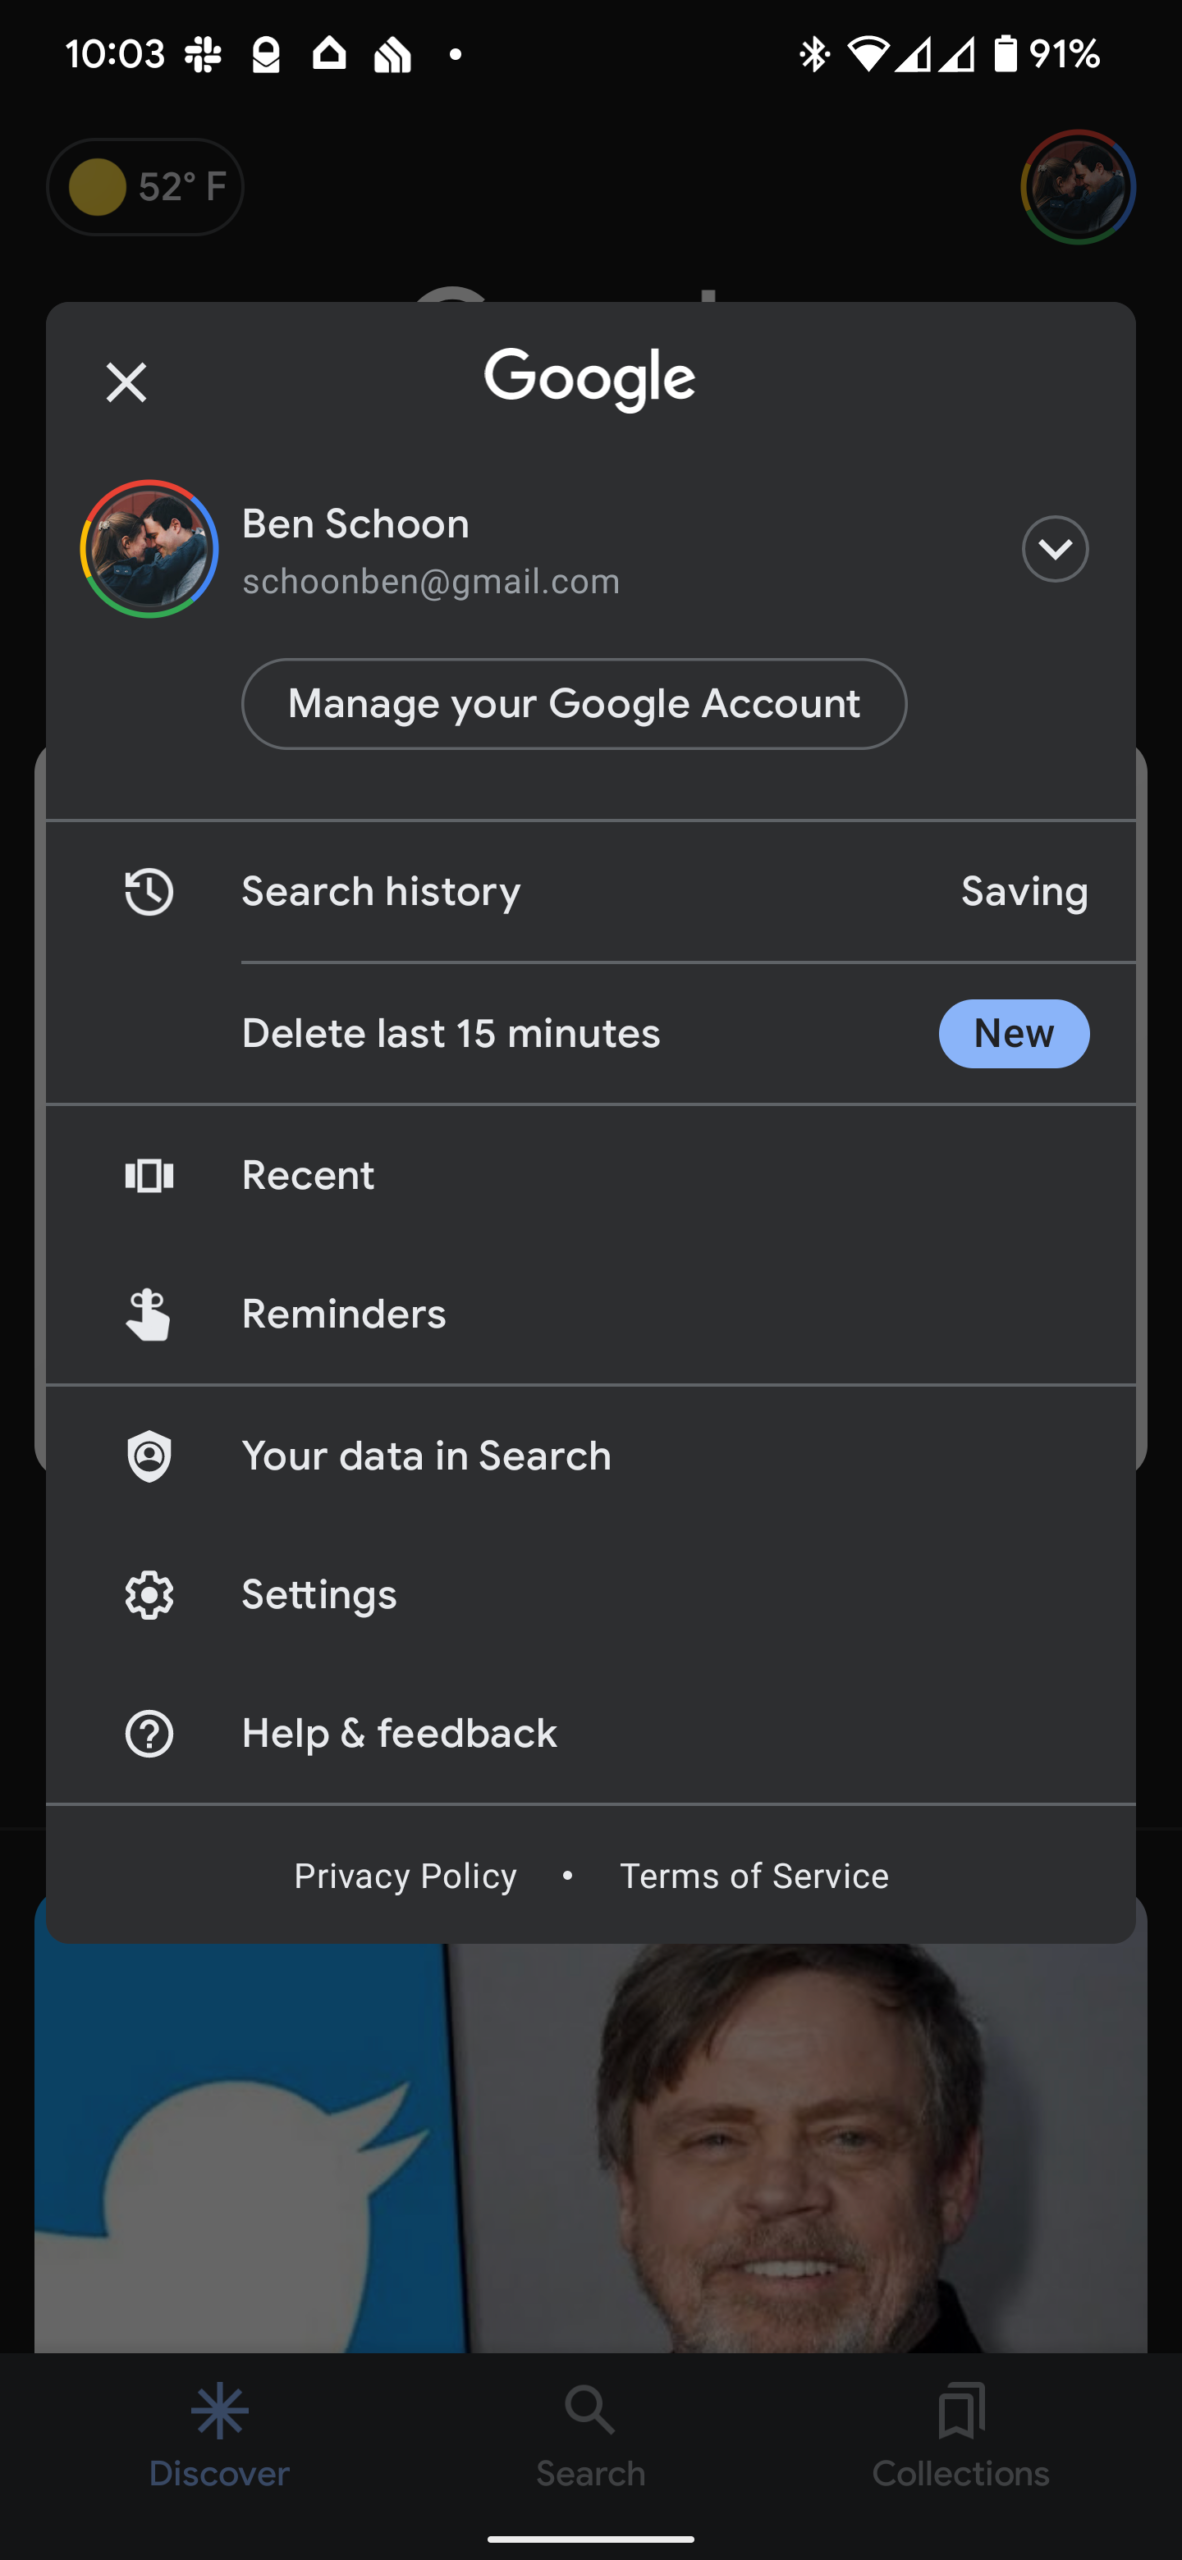 Приложение Google для Android позволяет удалить историю поиска за последние 15 минут